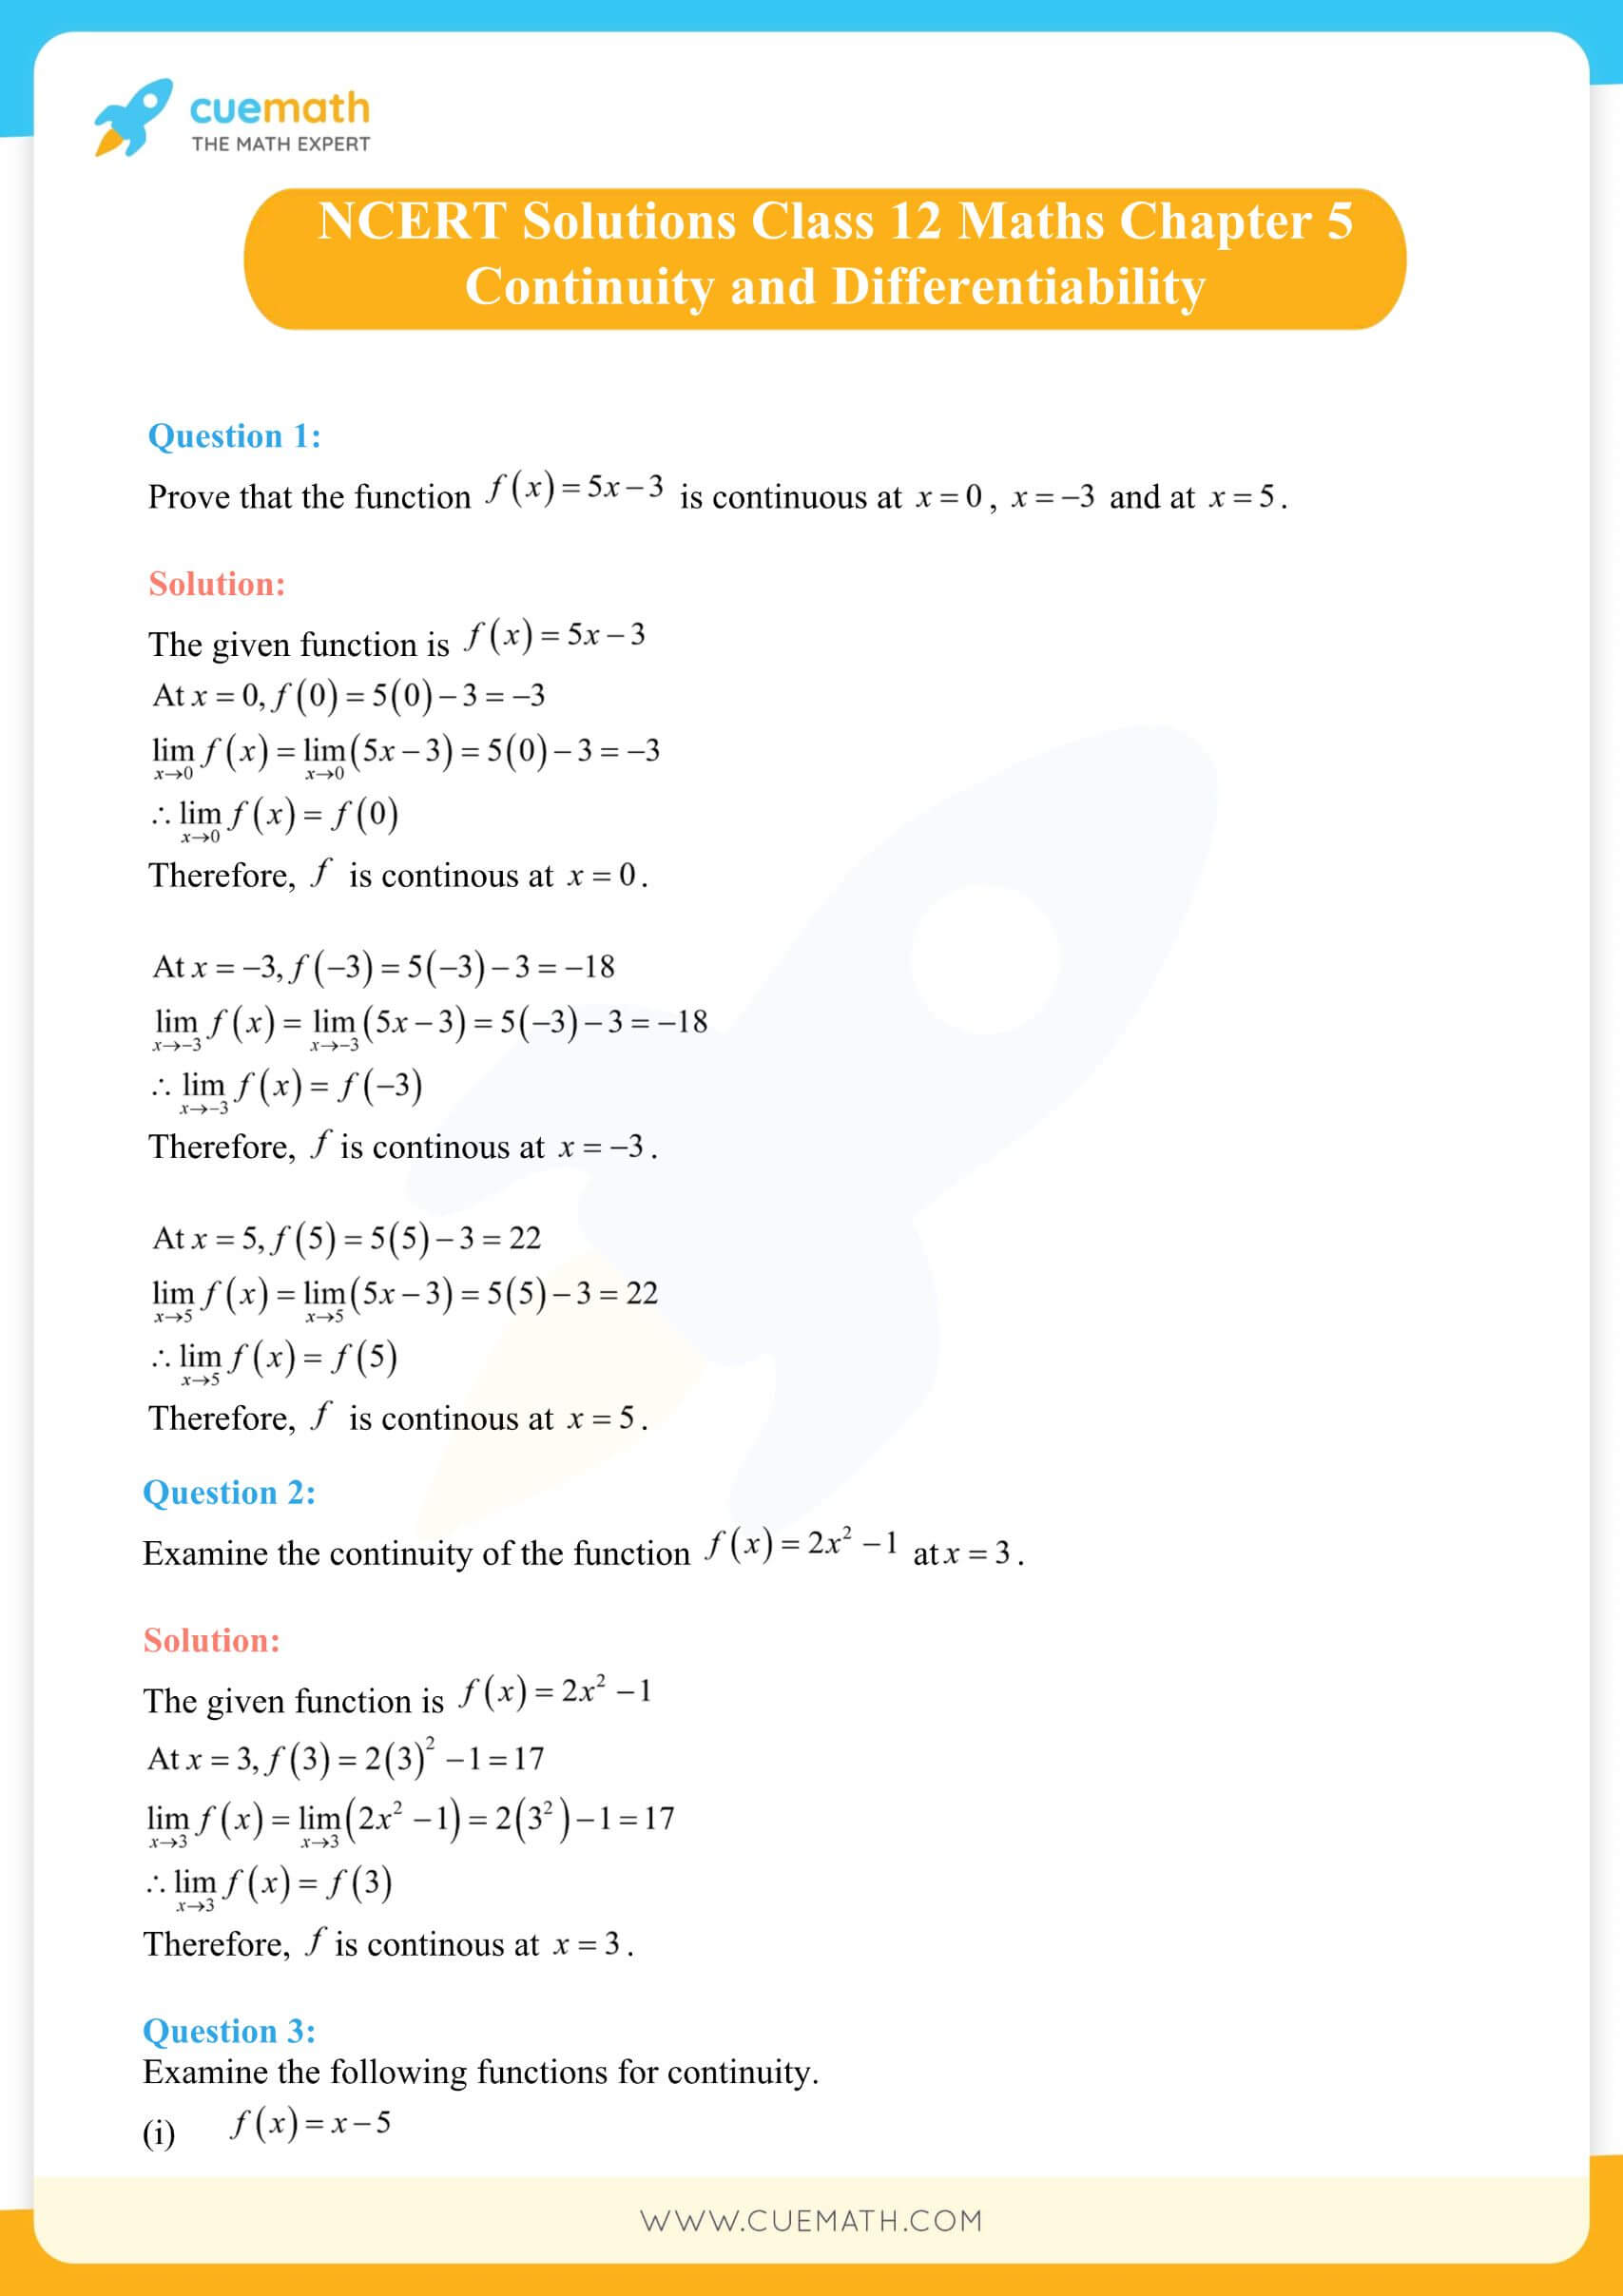 NCERT Solutions Class 12 Maths Chapter 5 Ex 5.1 1